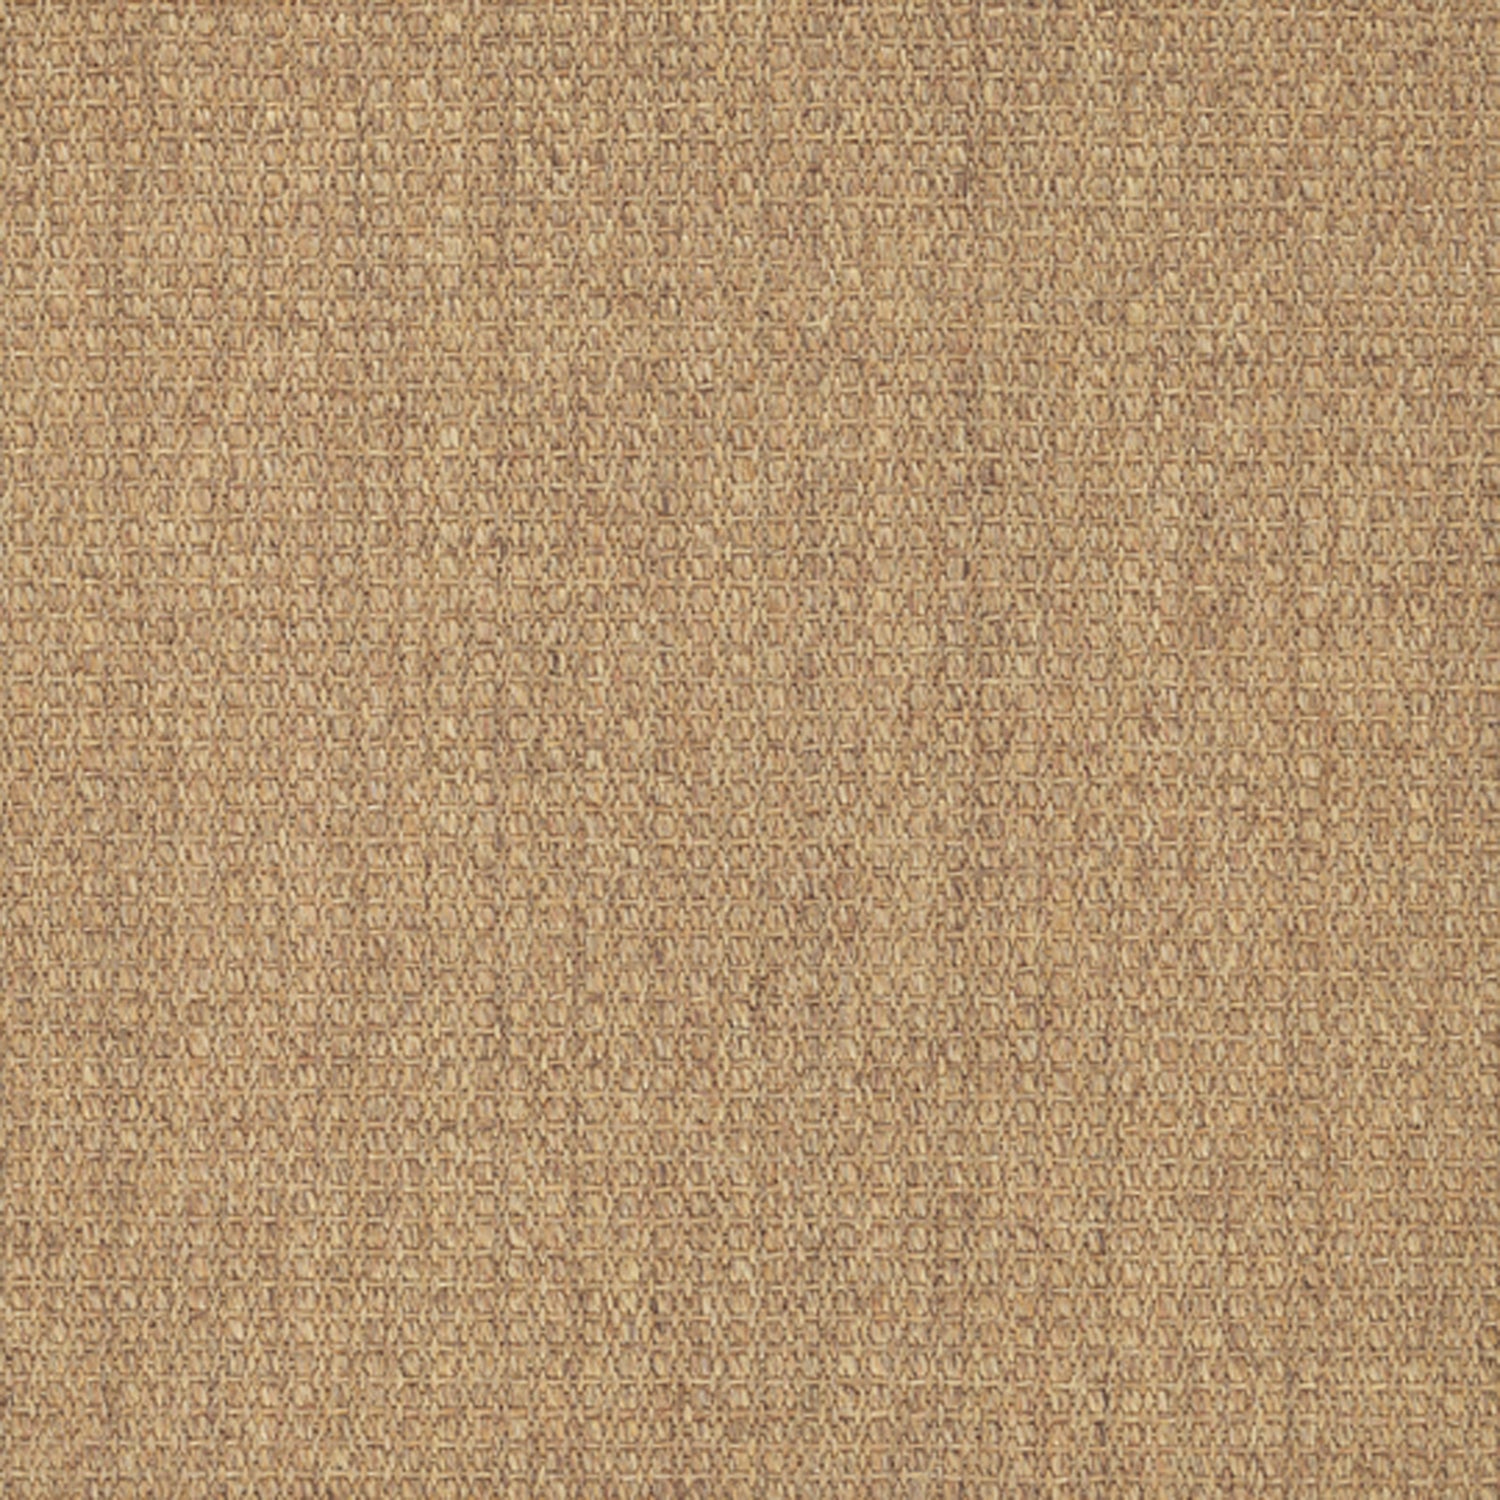 Sisal broadloom carpet swatch in a flat grid weave in tan.